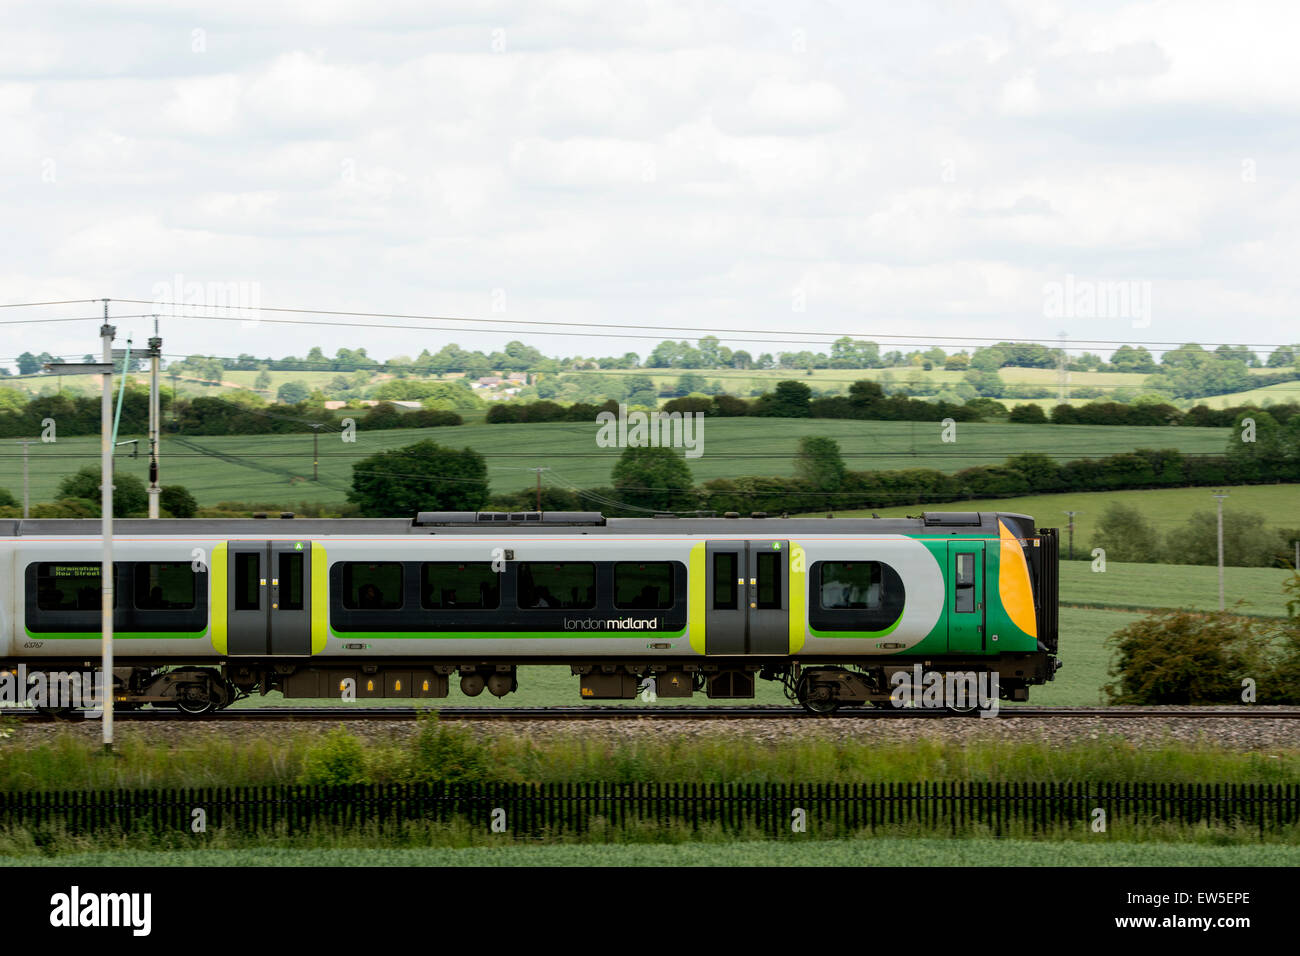 London Midland treno sulla linea principale della costa occidentale, Northamptonshire, Regno Unito Foto Stock